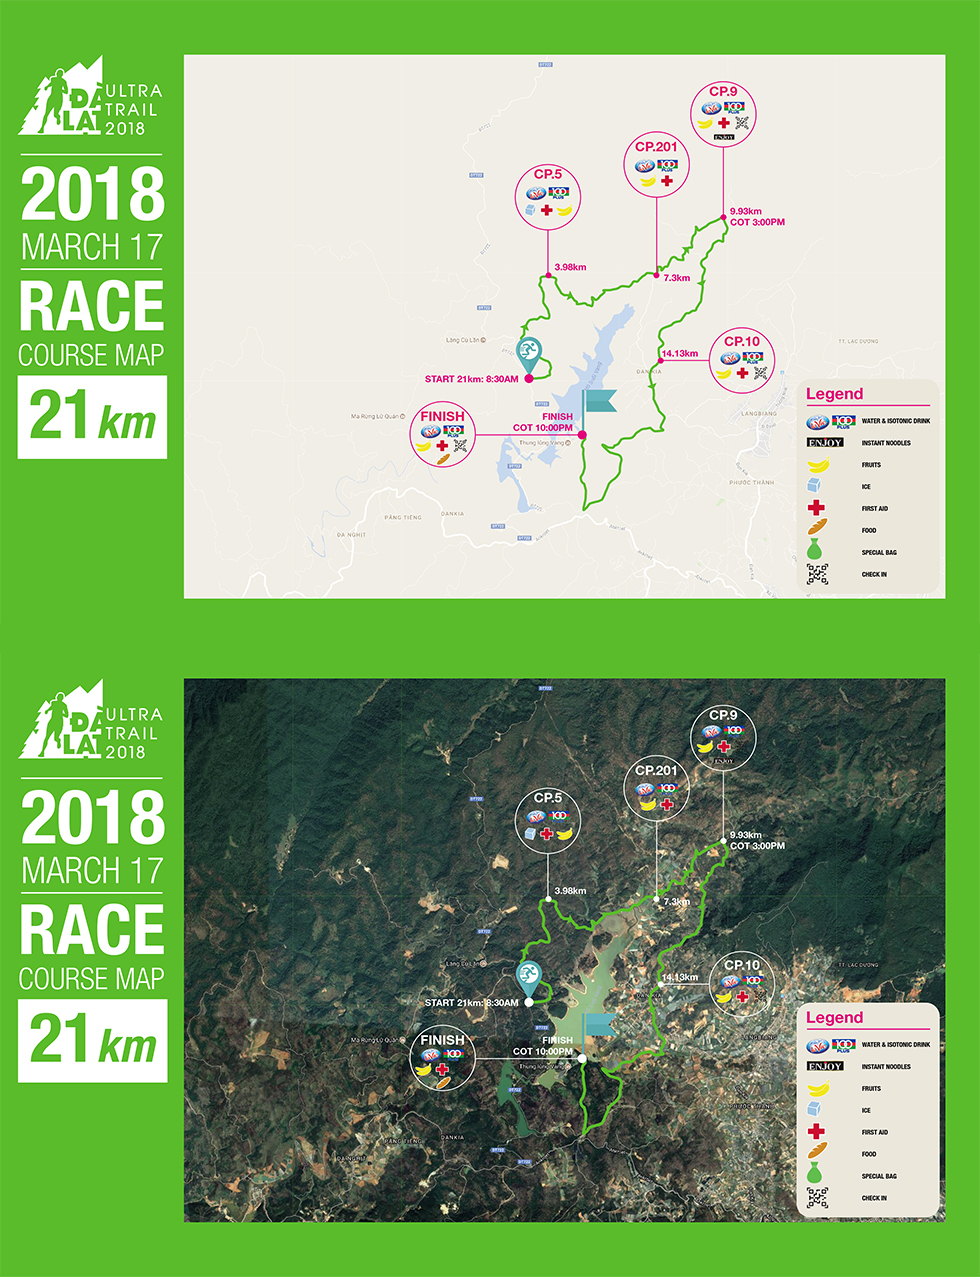 dalat-ultra-trail-2018